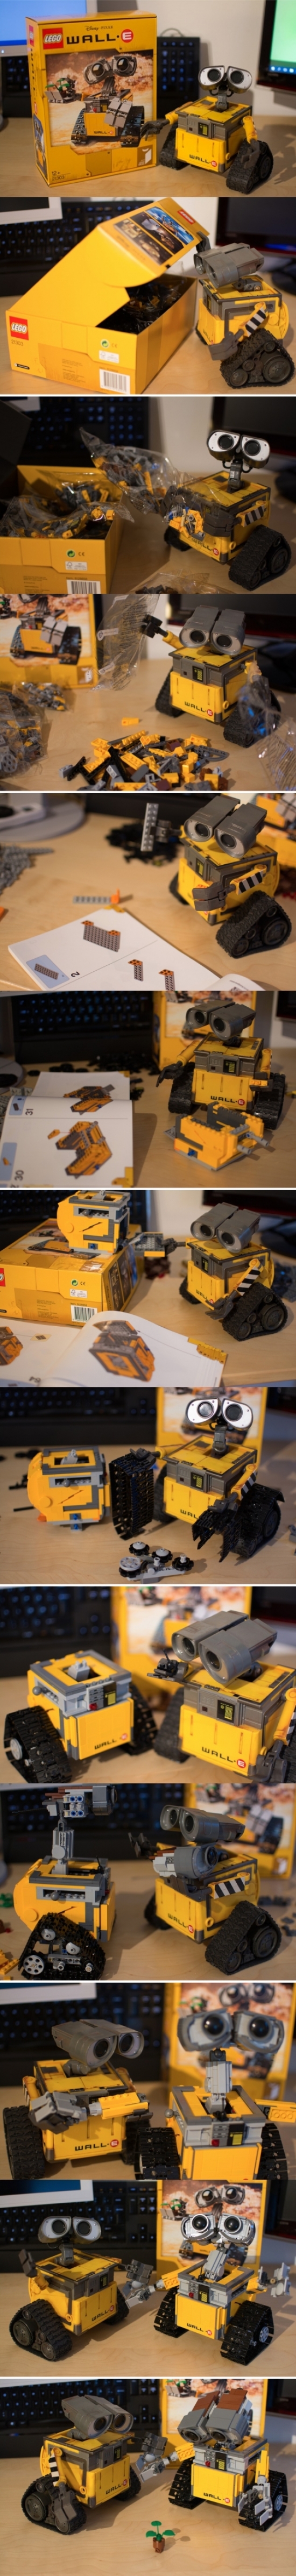 Batallón de Limpieza,construir,gemelo,igual,ingenio,ingenioso,lego,robot,WALL·E